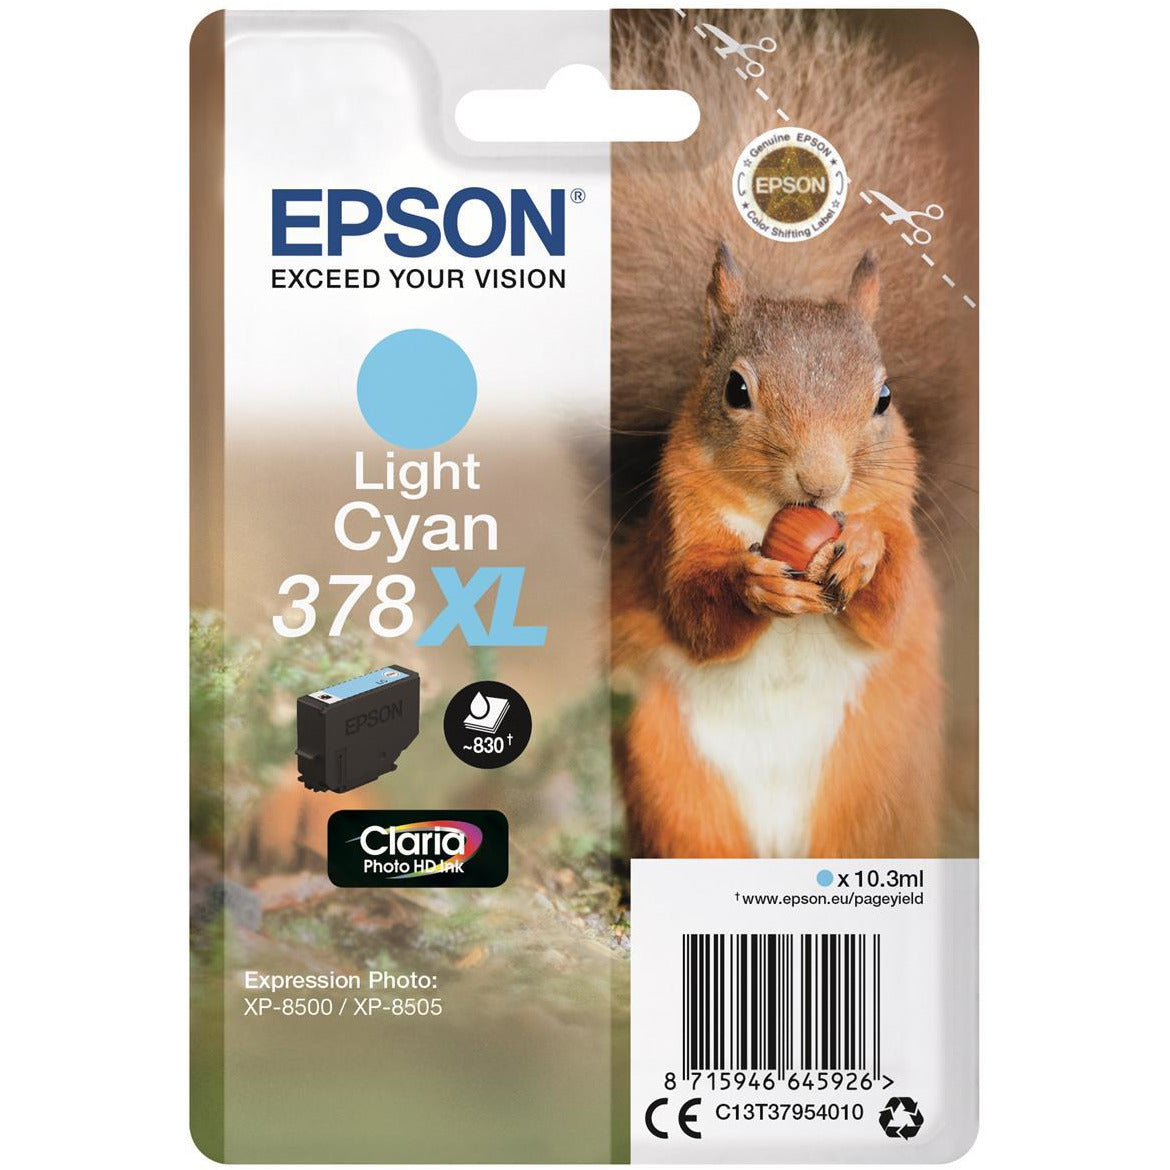 Epson Xp8500/8505 Light blátt blekhylki 10.3ml